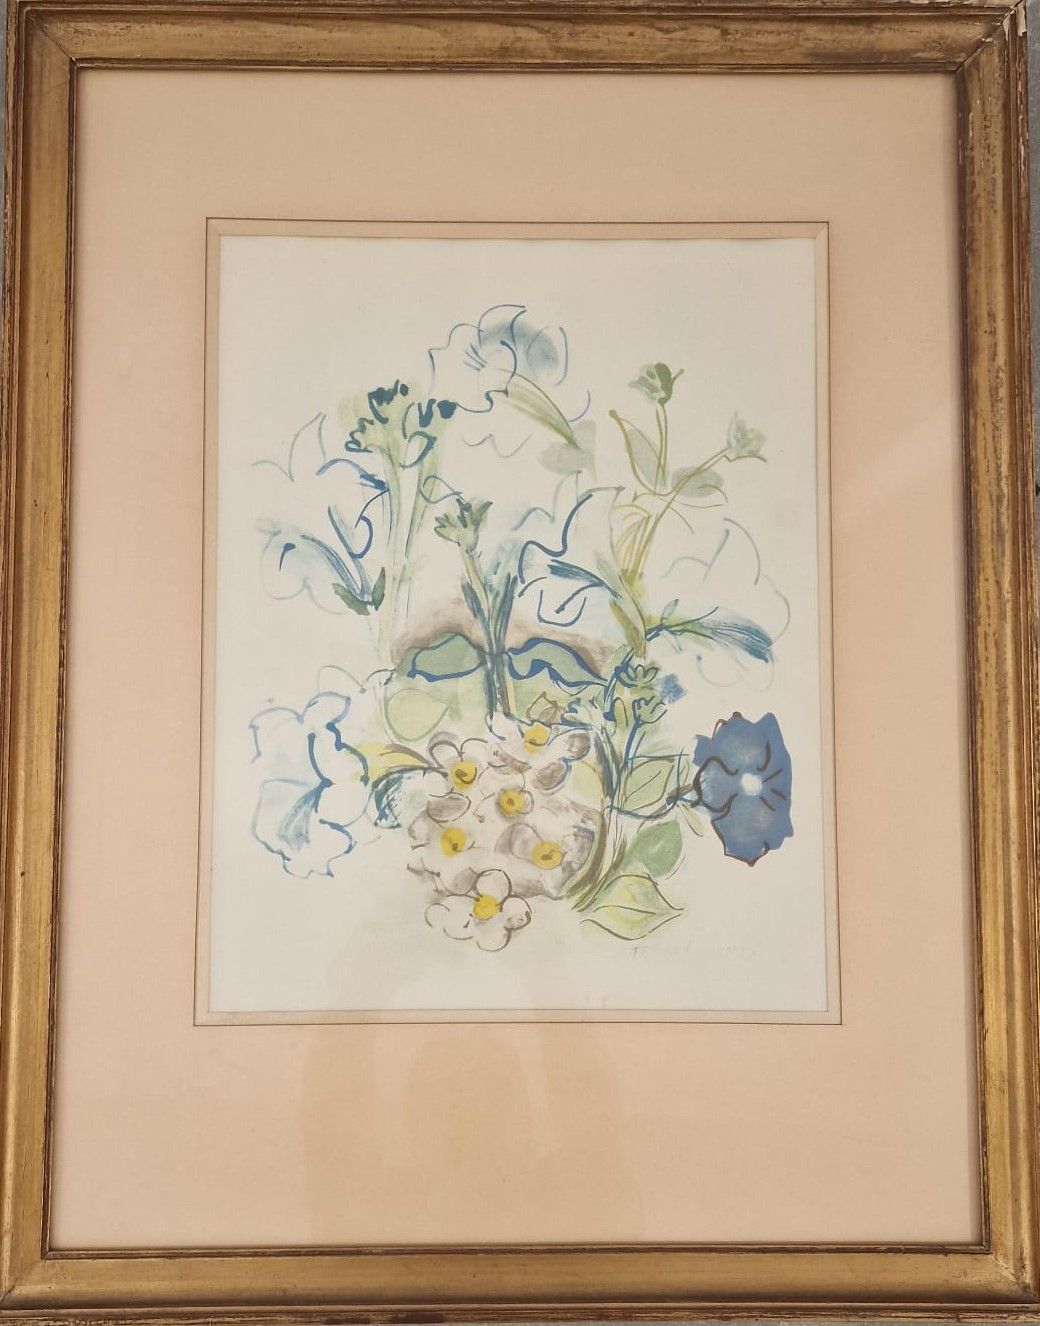 Null 拉乌尔-杜菲 (1877-1953)

鲜花

石版画

右下方有签名

38 x 30厘米